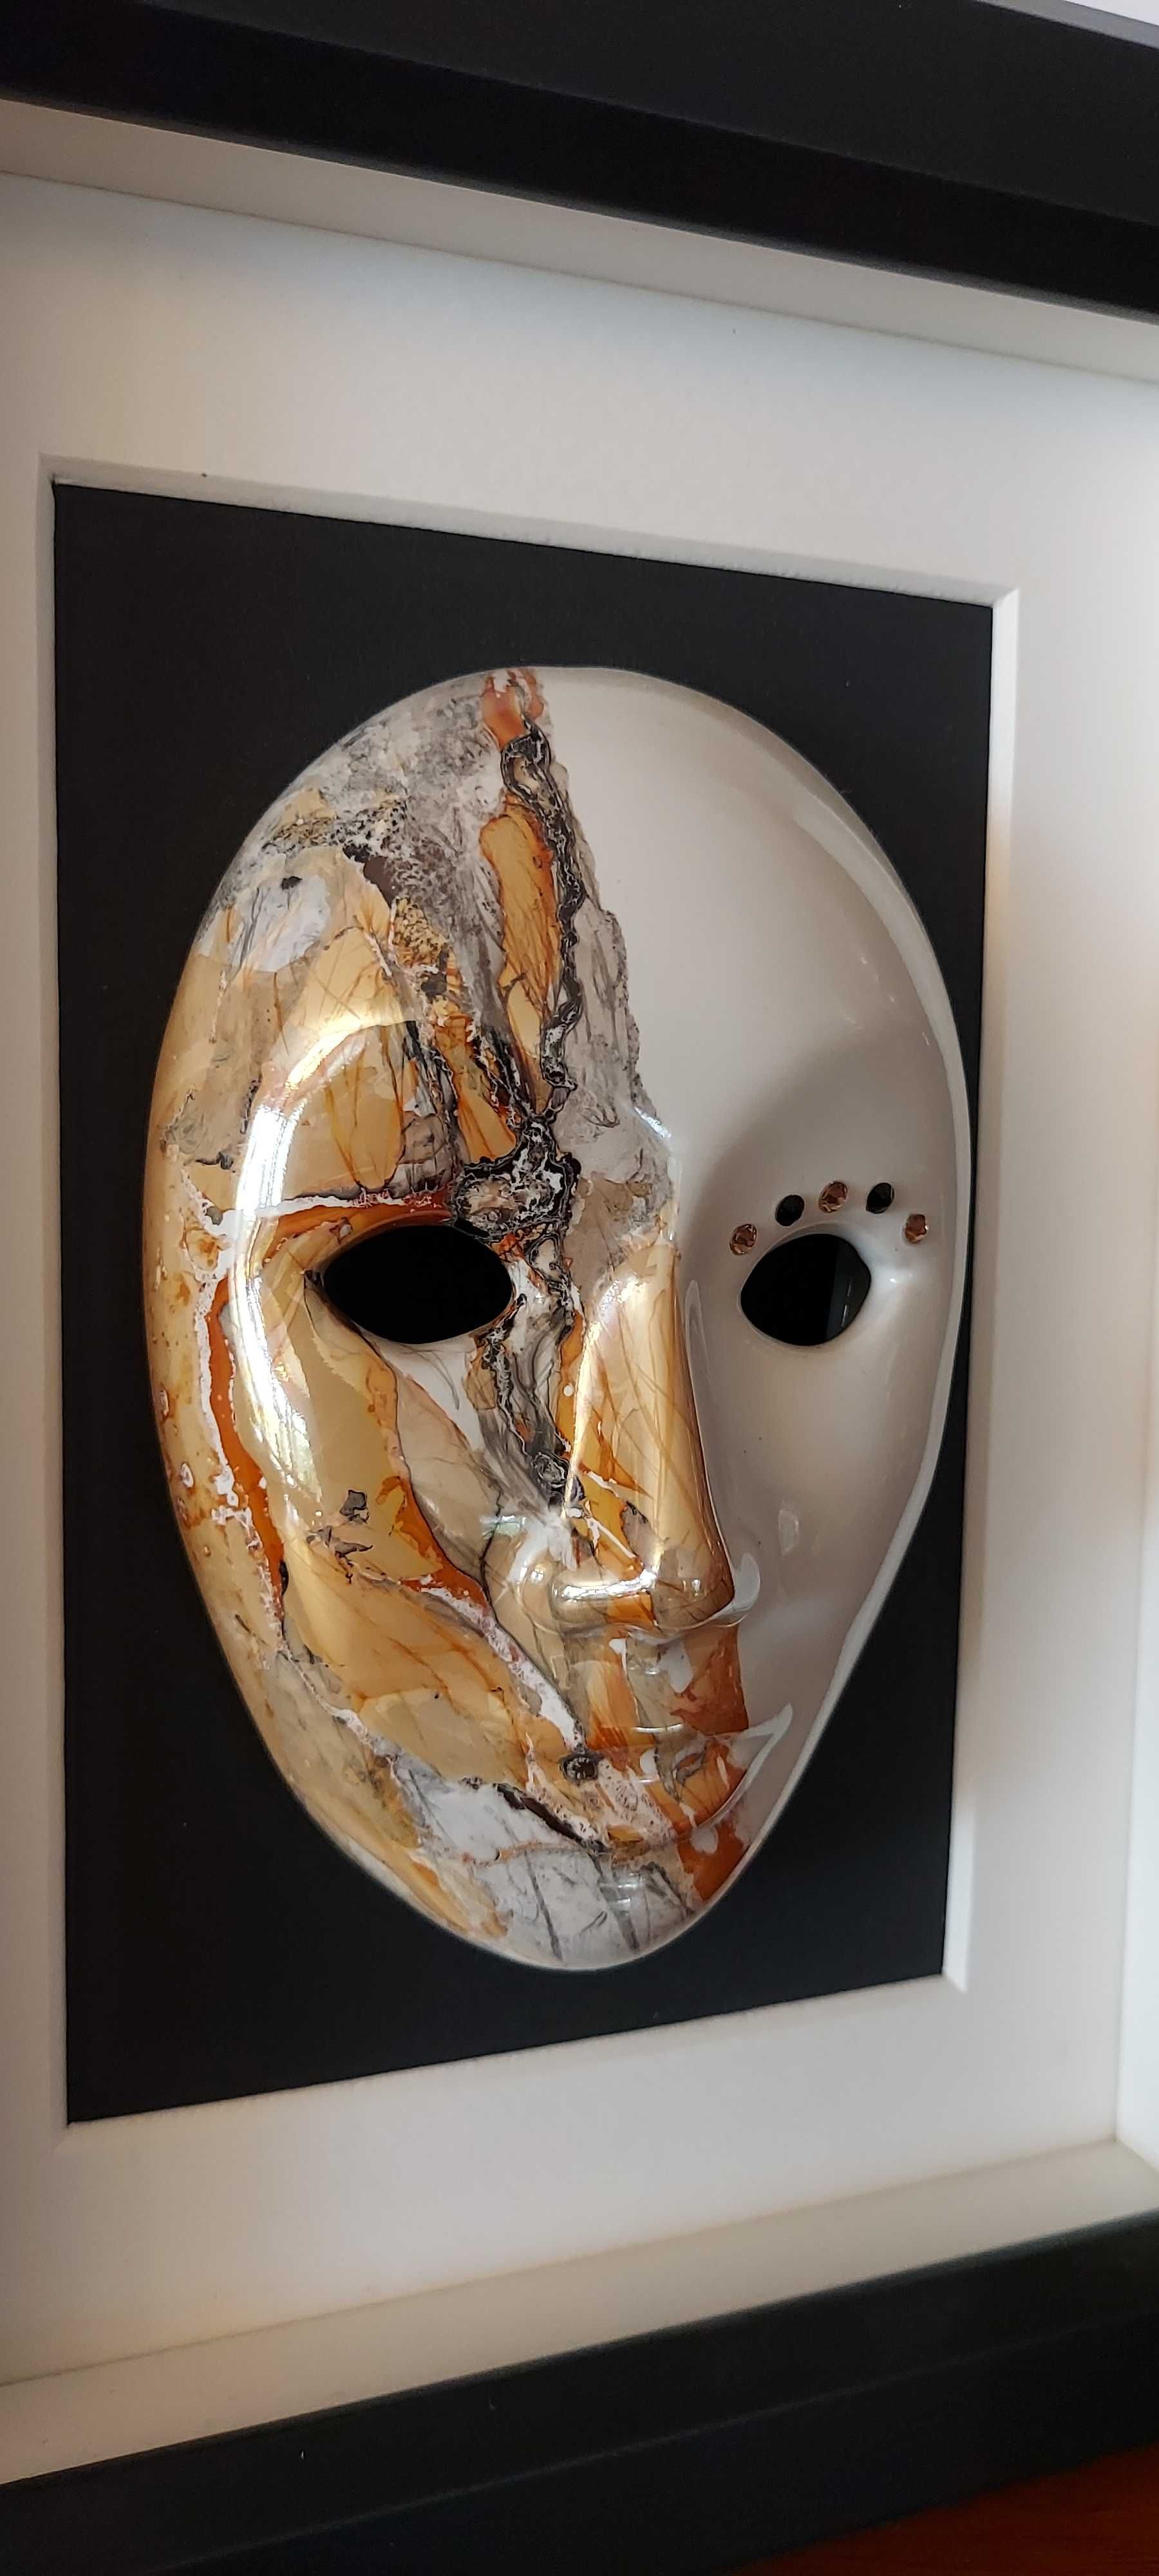 Obraz - Maska ceramiczna malowana ręcznie